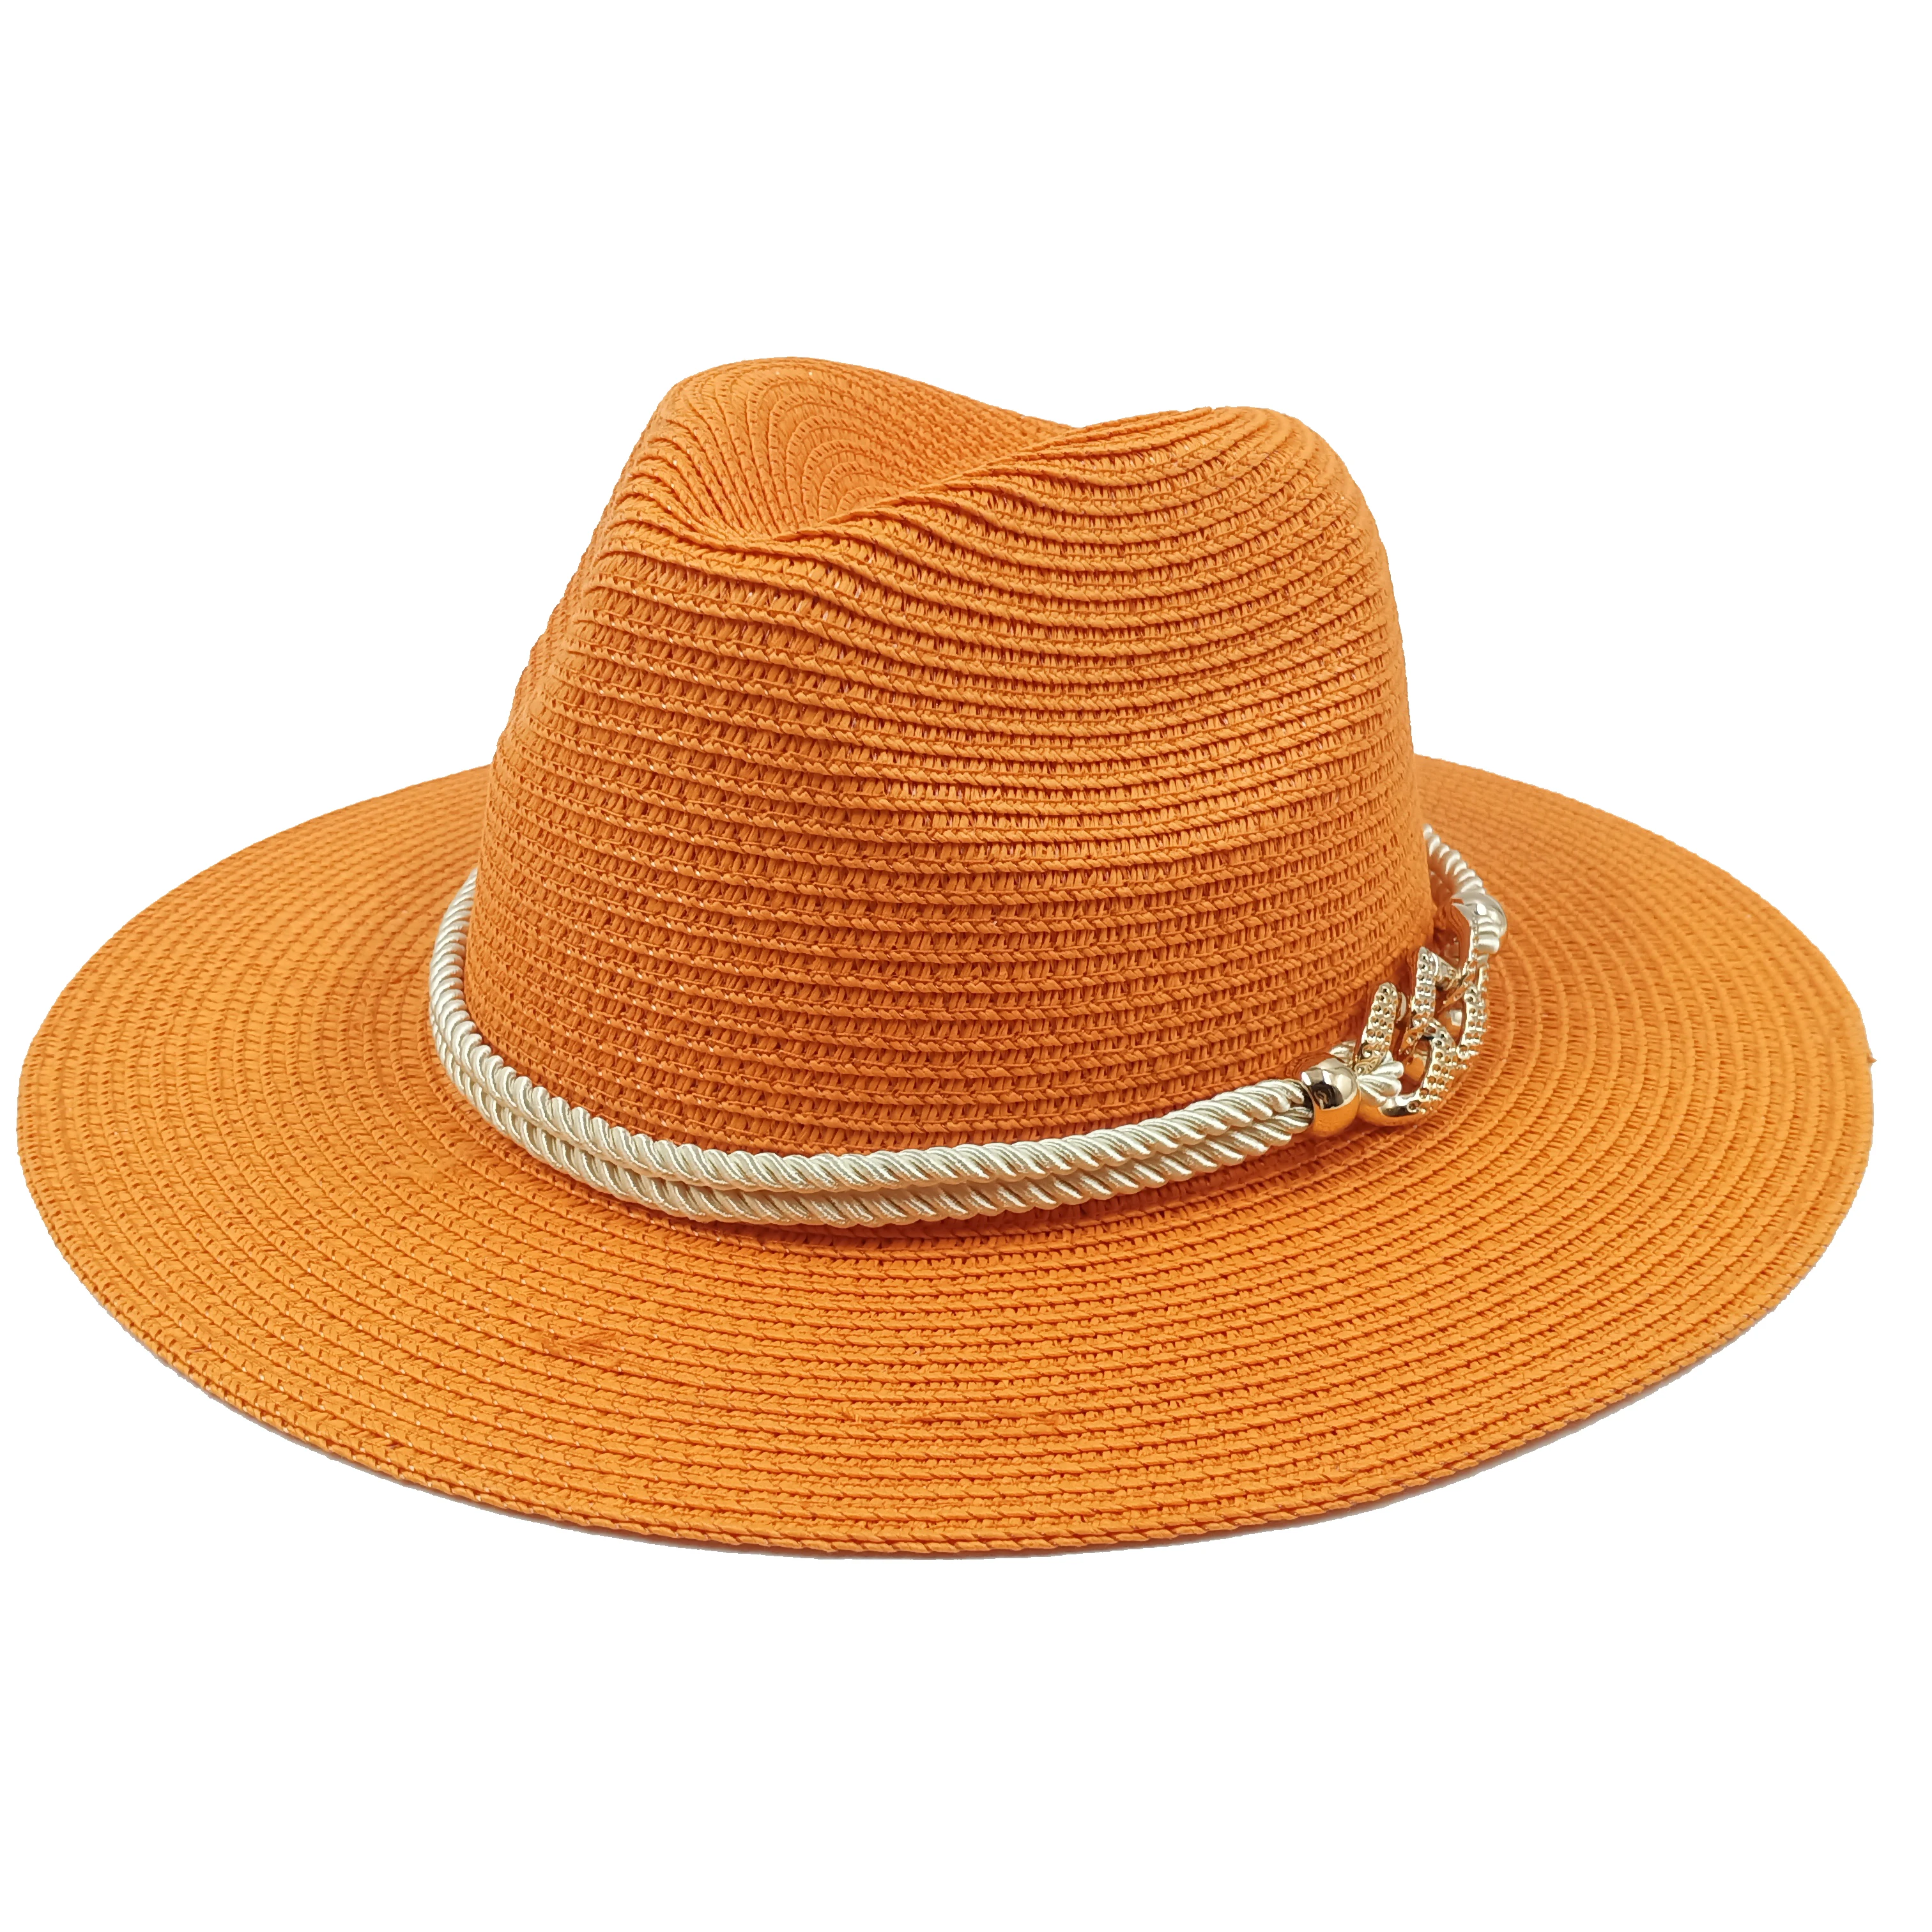 Beach Hat Vintage Wide Brim Straw Summer Sun Hats